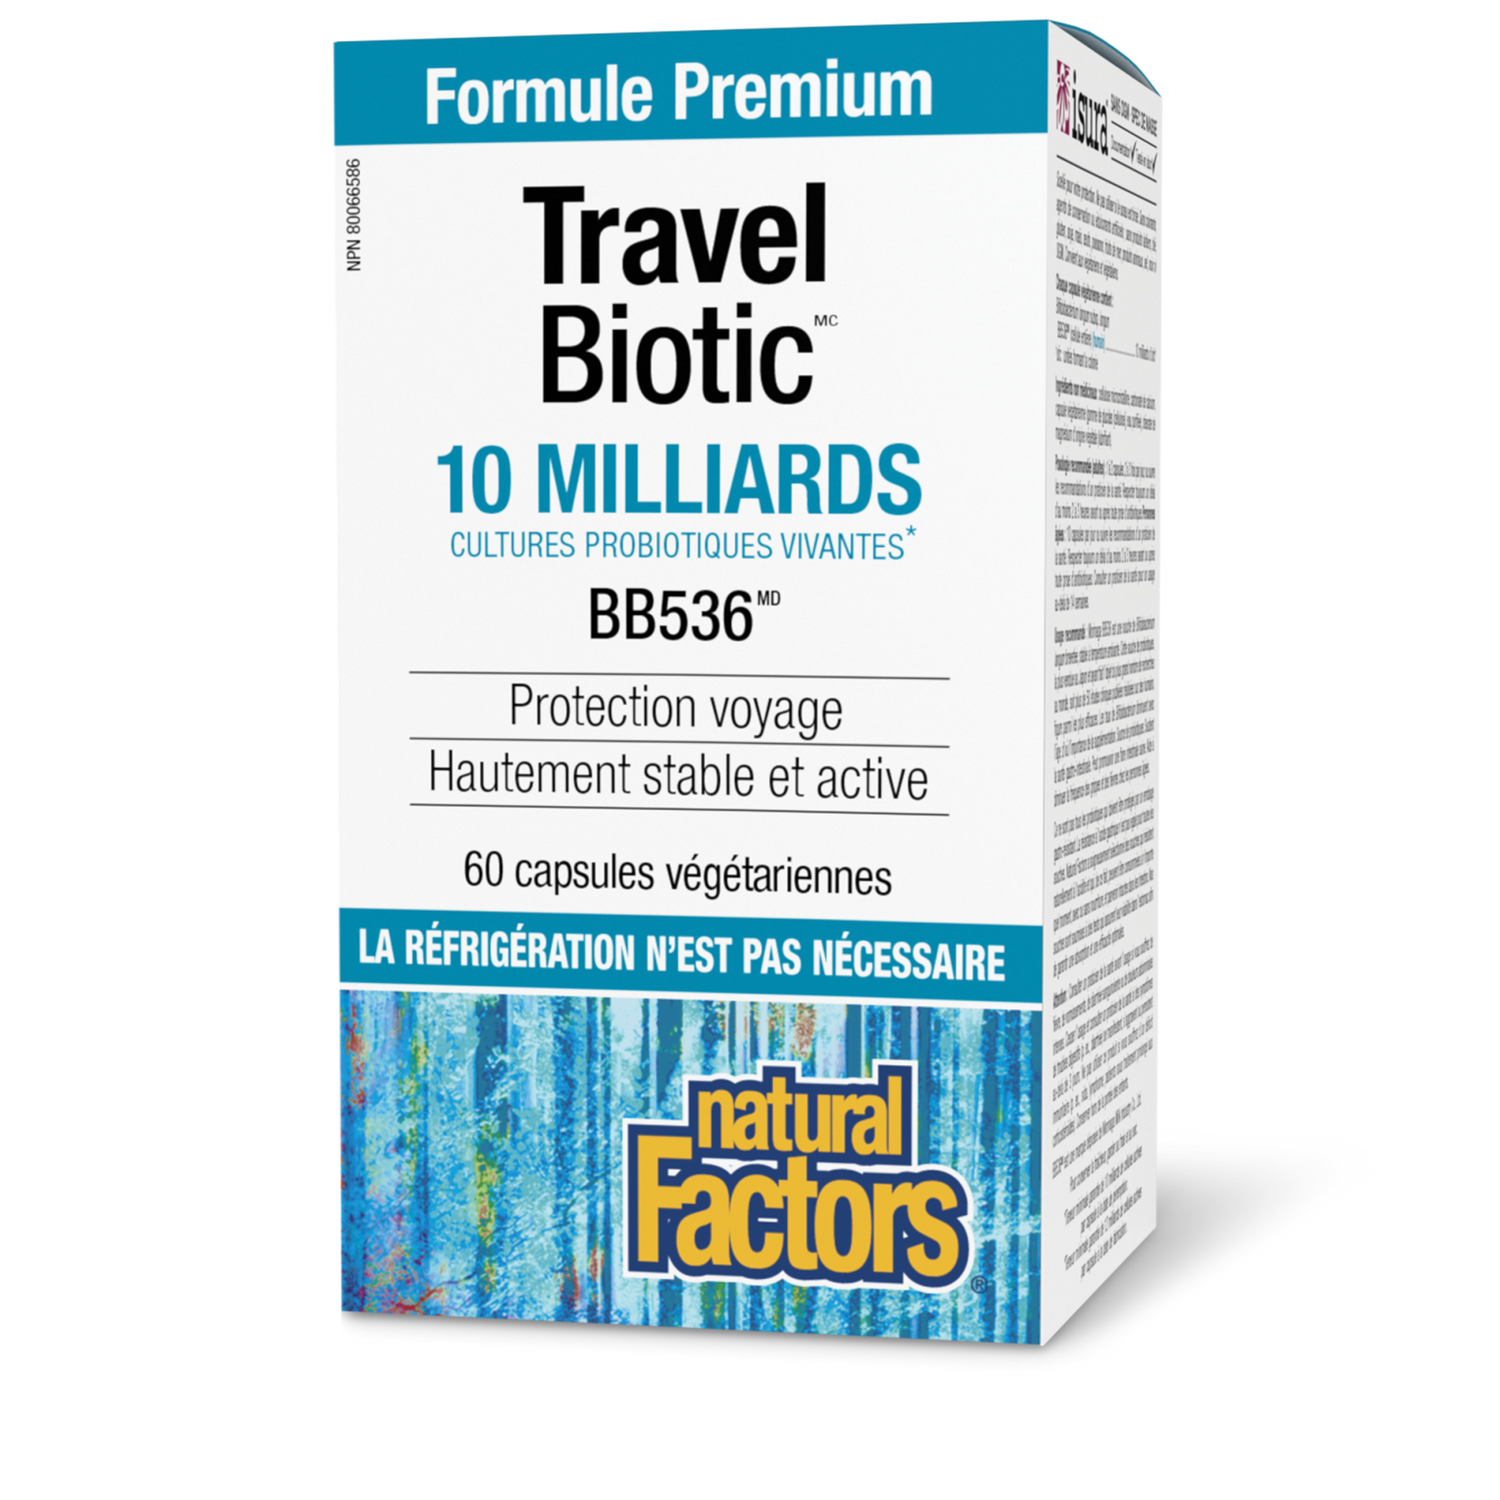 Travel Biotic BB536 10 milliards de cultures probiotiques vivantes, Natural Factors|v|image|1812